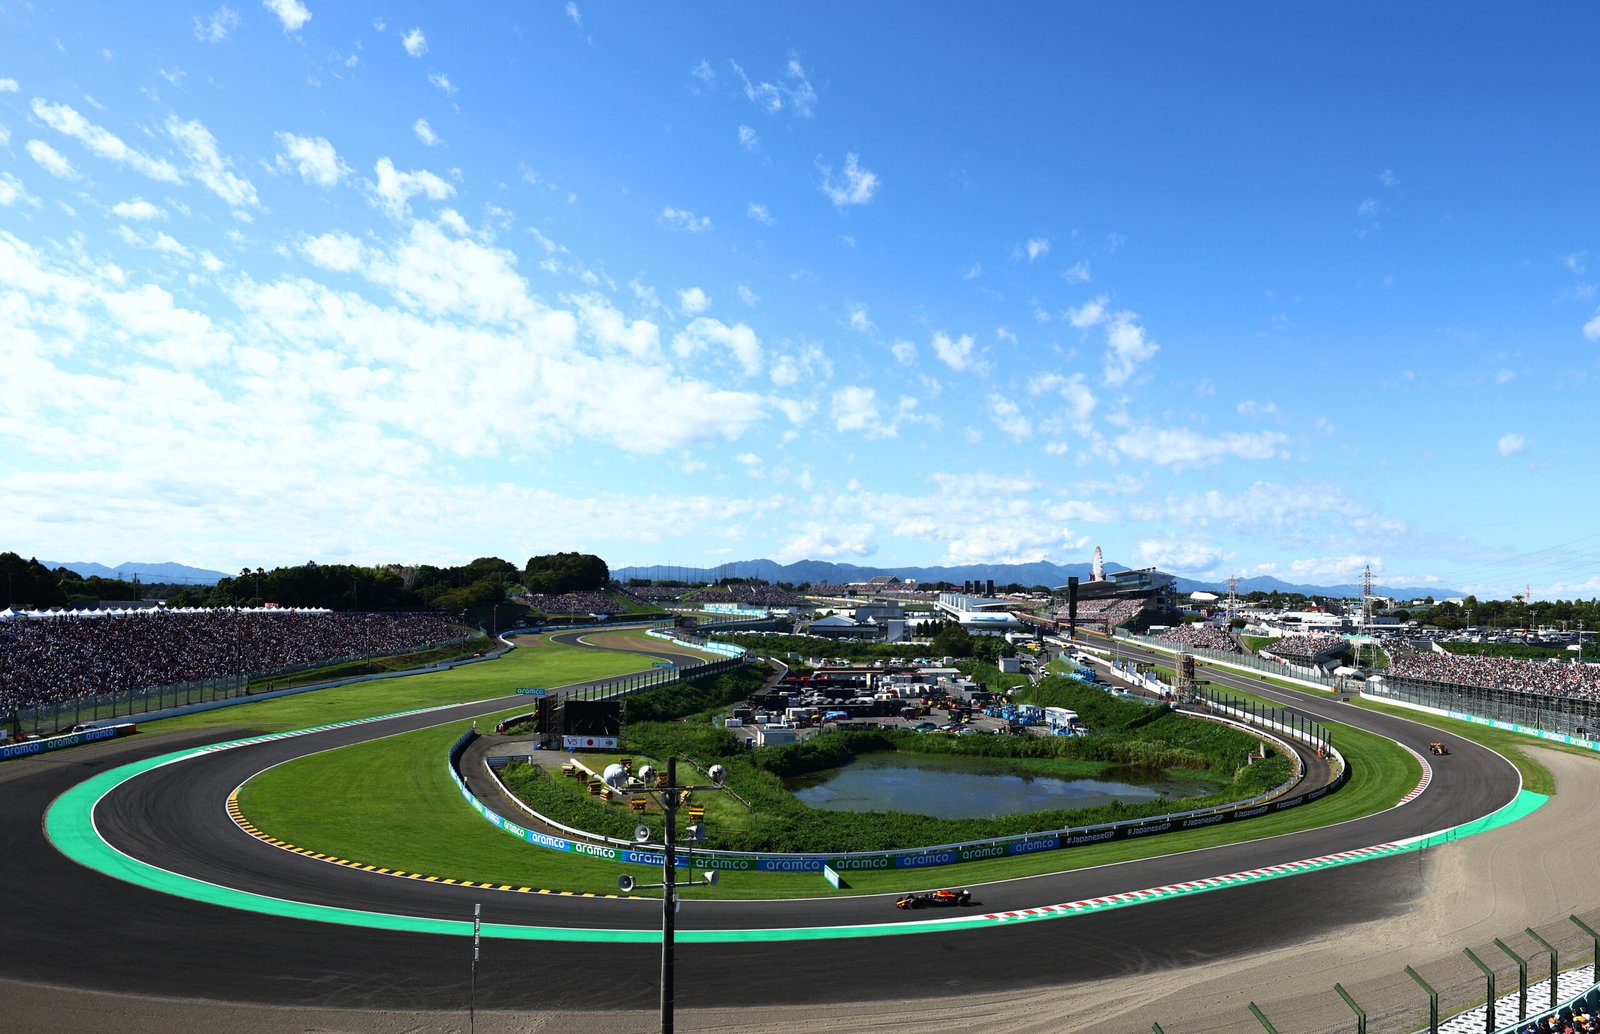 Preview do GP do Japão – Fórmula 1 visita Suzuka em outro momento da temporada